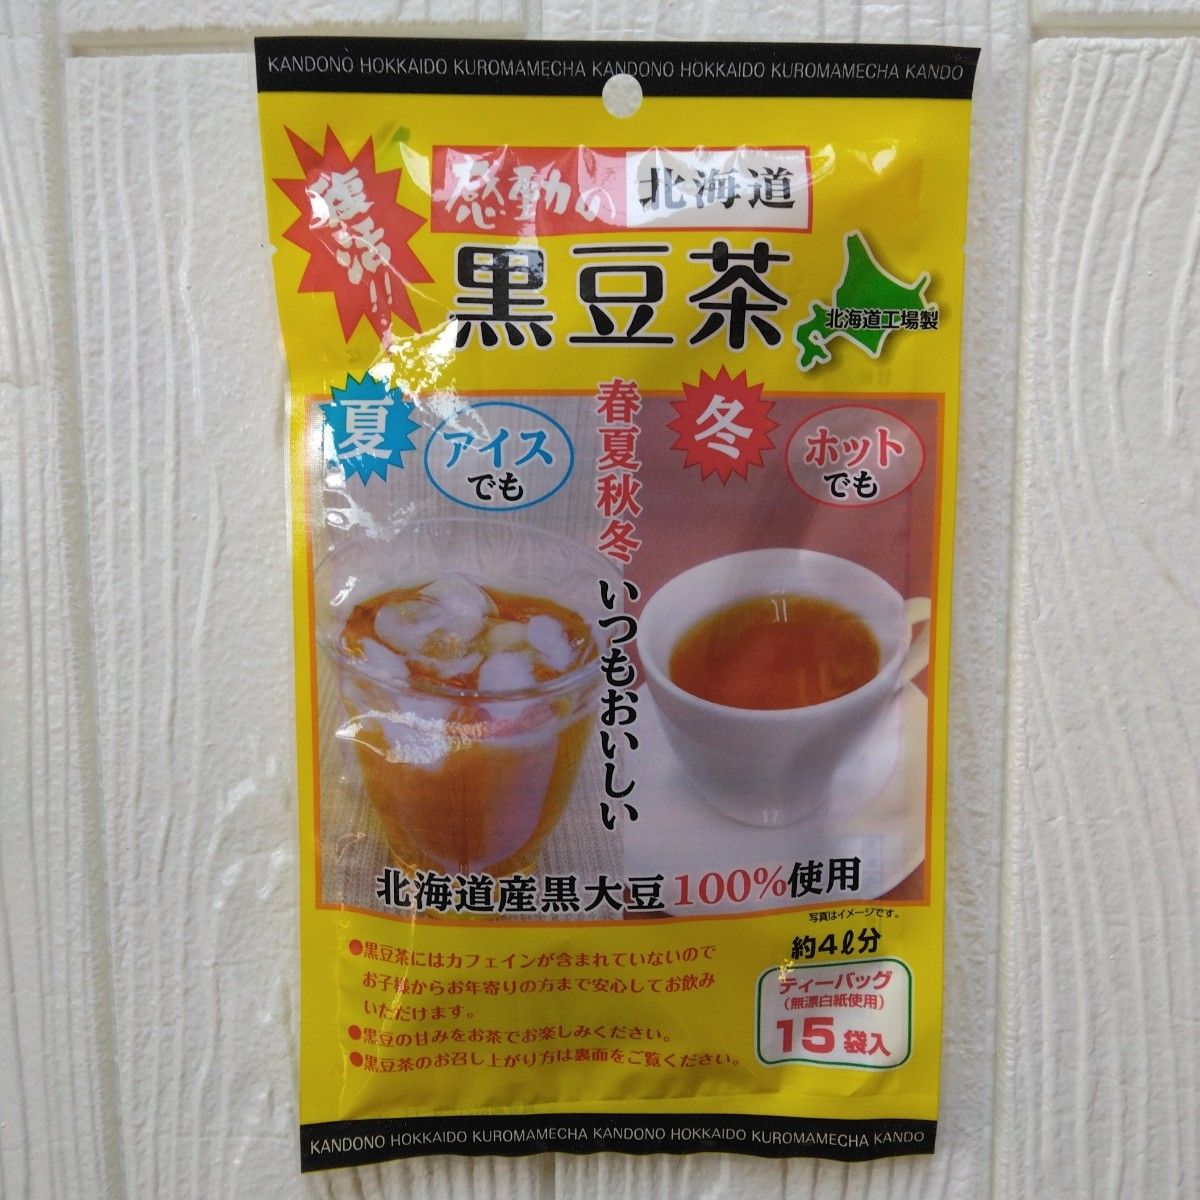 感動の北海道 あずき茶①・黒豆茶①【2袋セット】